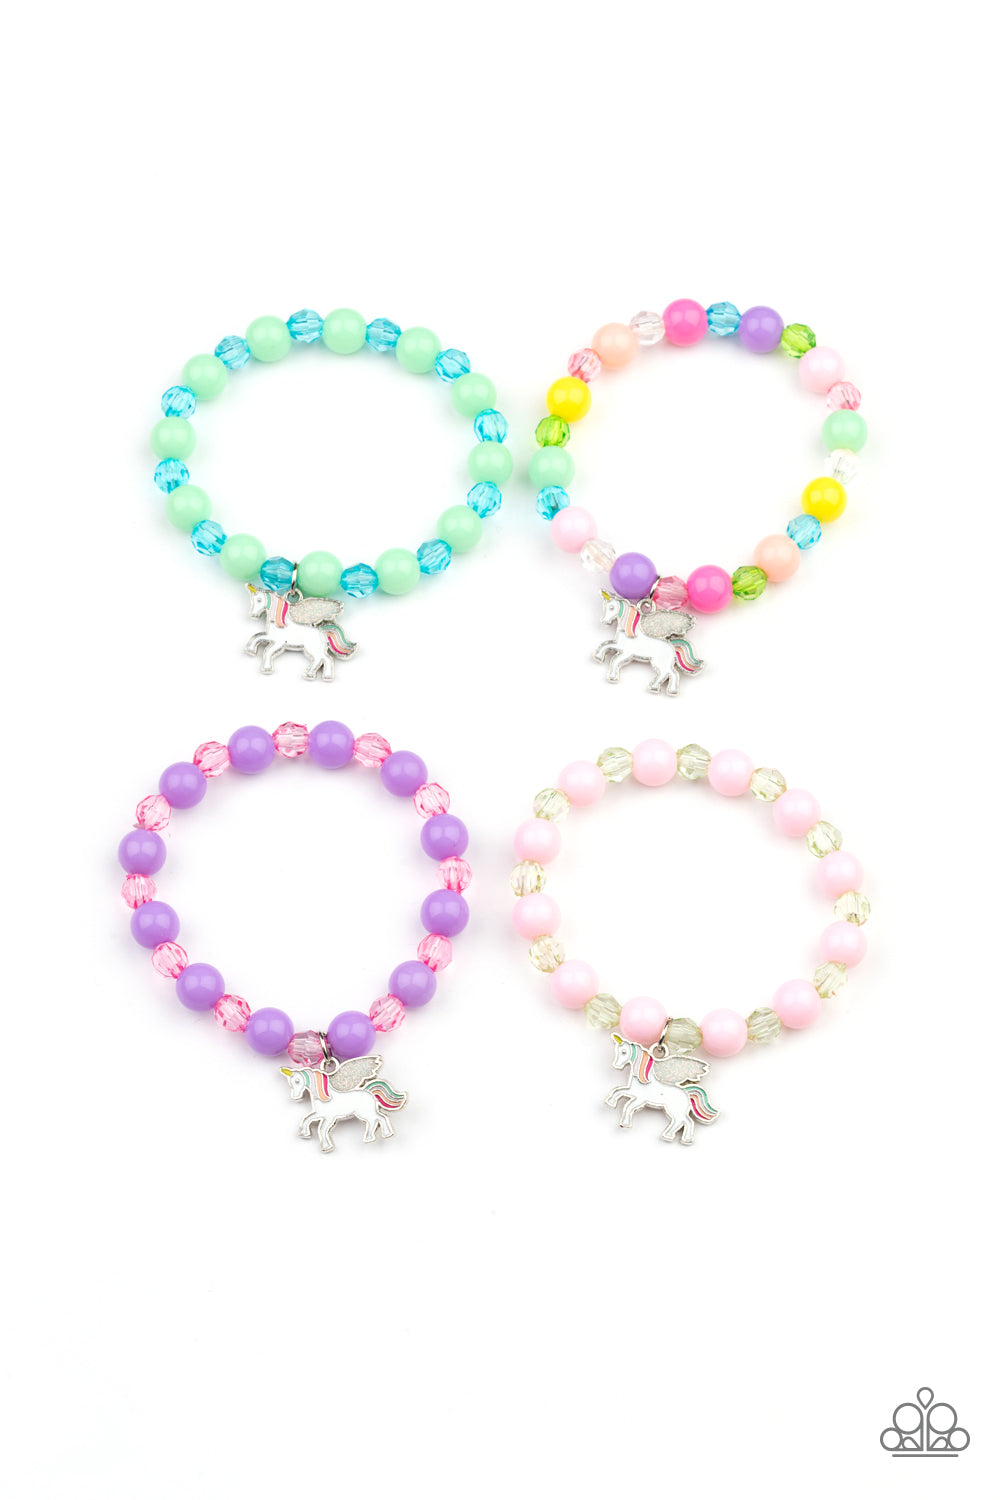 starlet-shimmer-bracelet-kit-6354-p9ss-mtxx-290xx